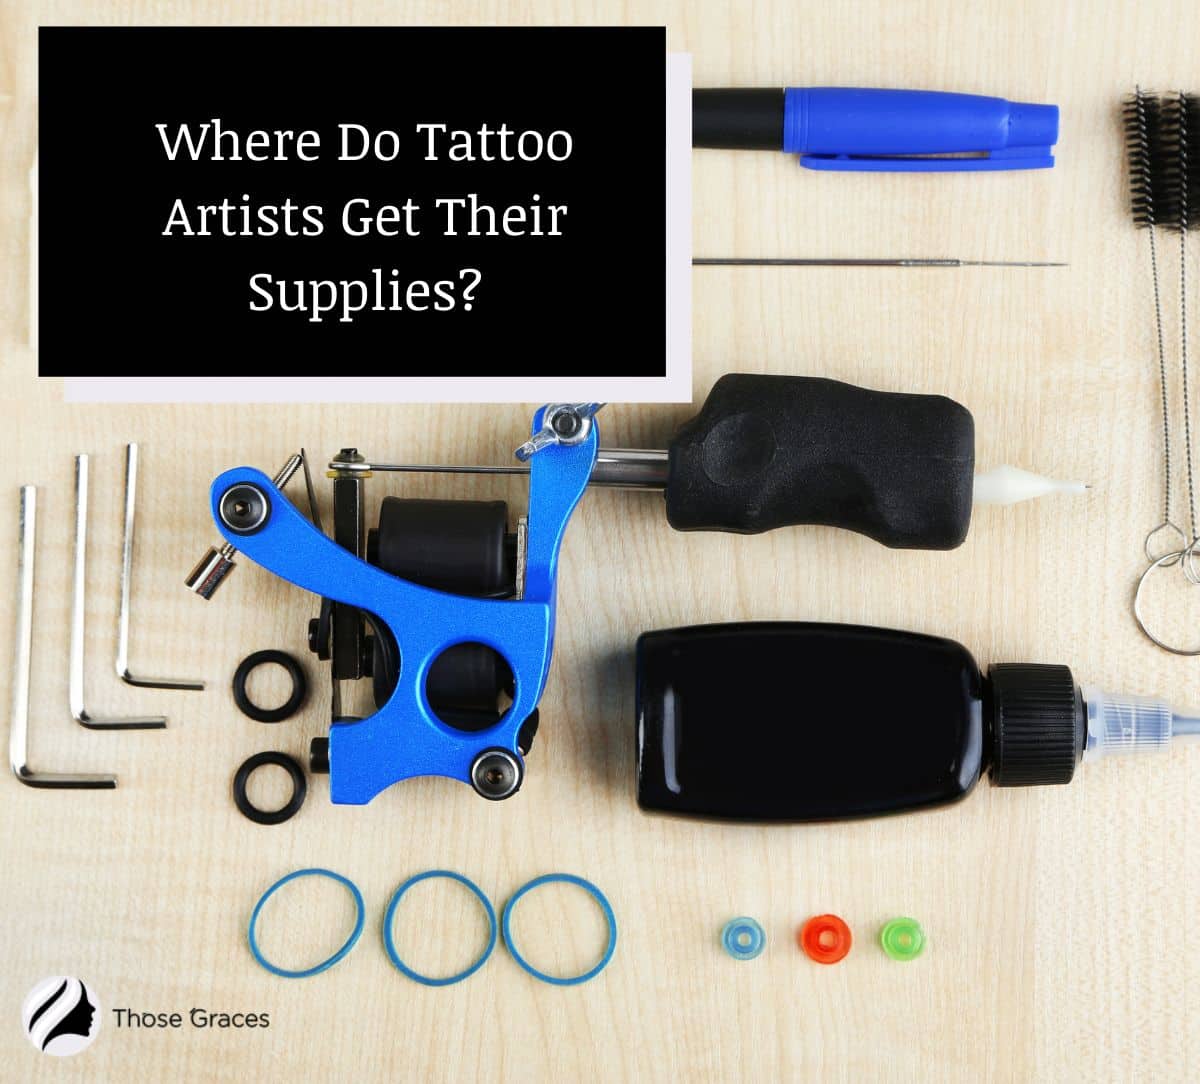 tattoo supplies but where do tattoo artists get their supplies